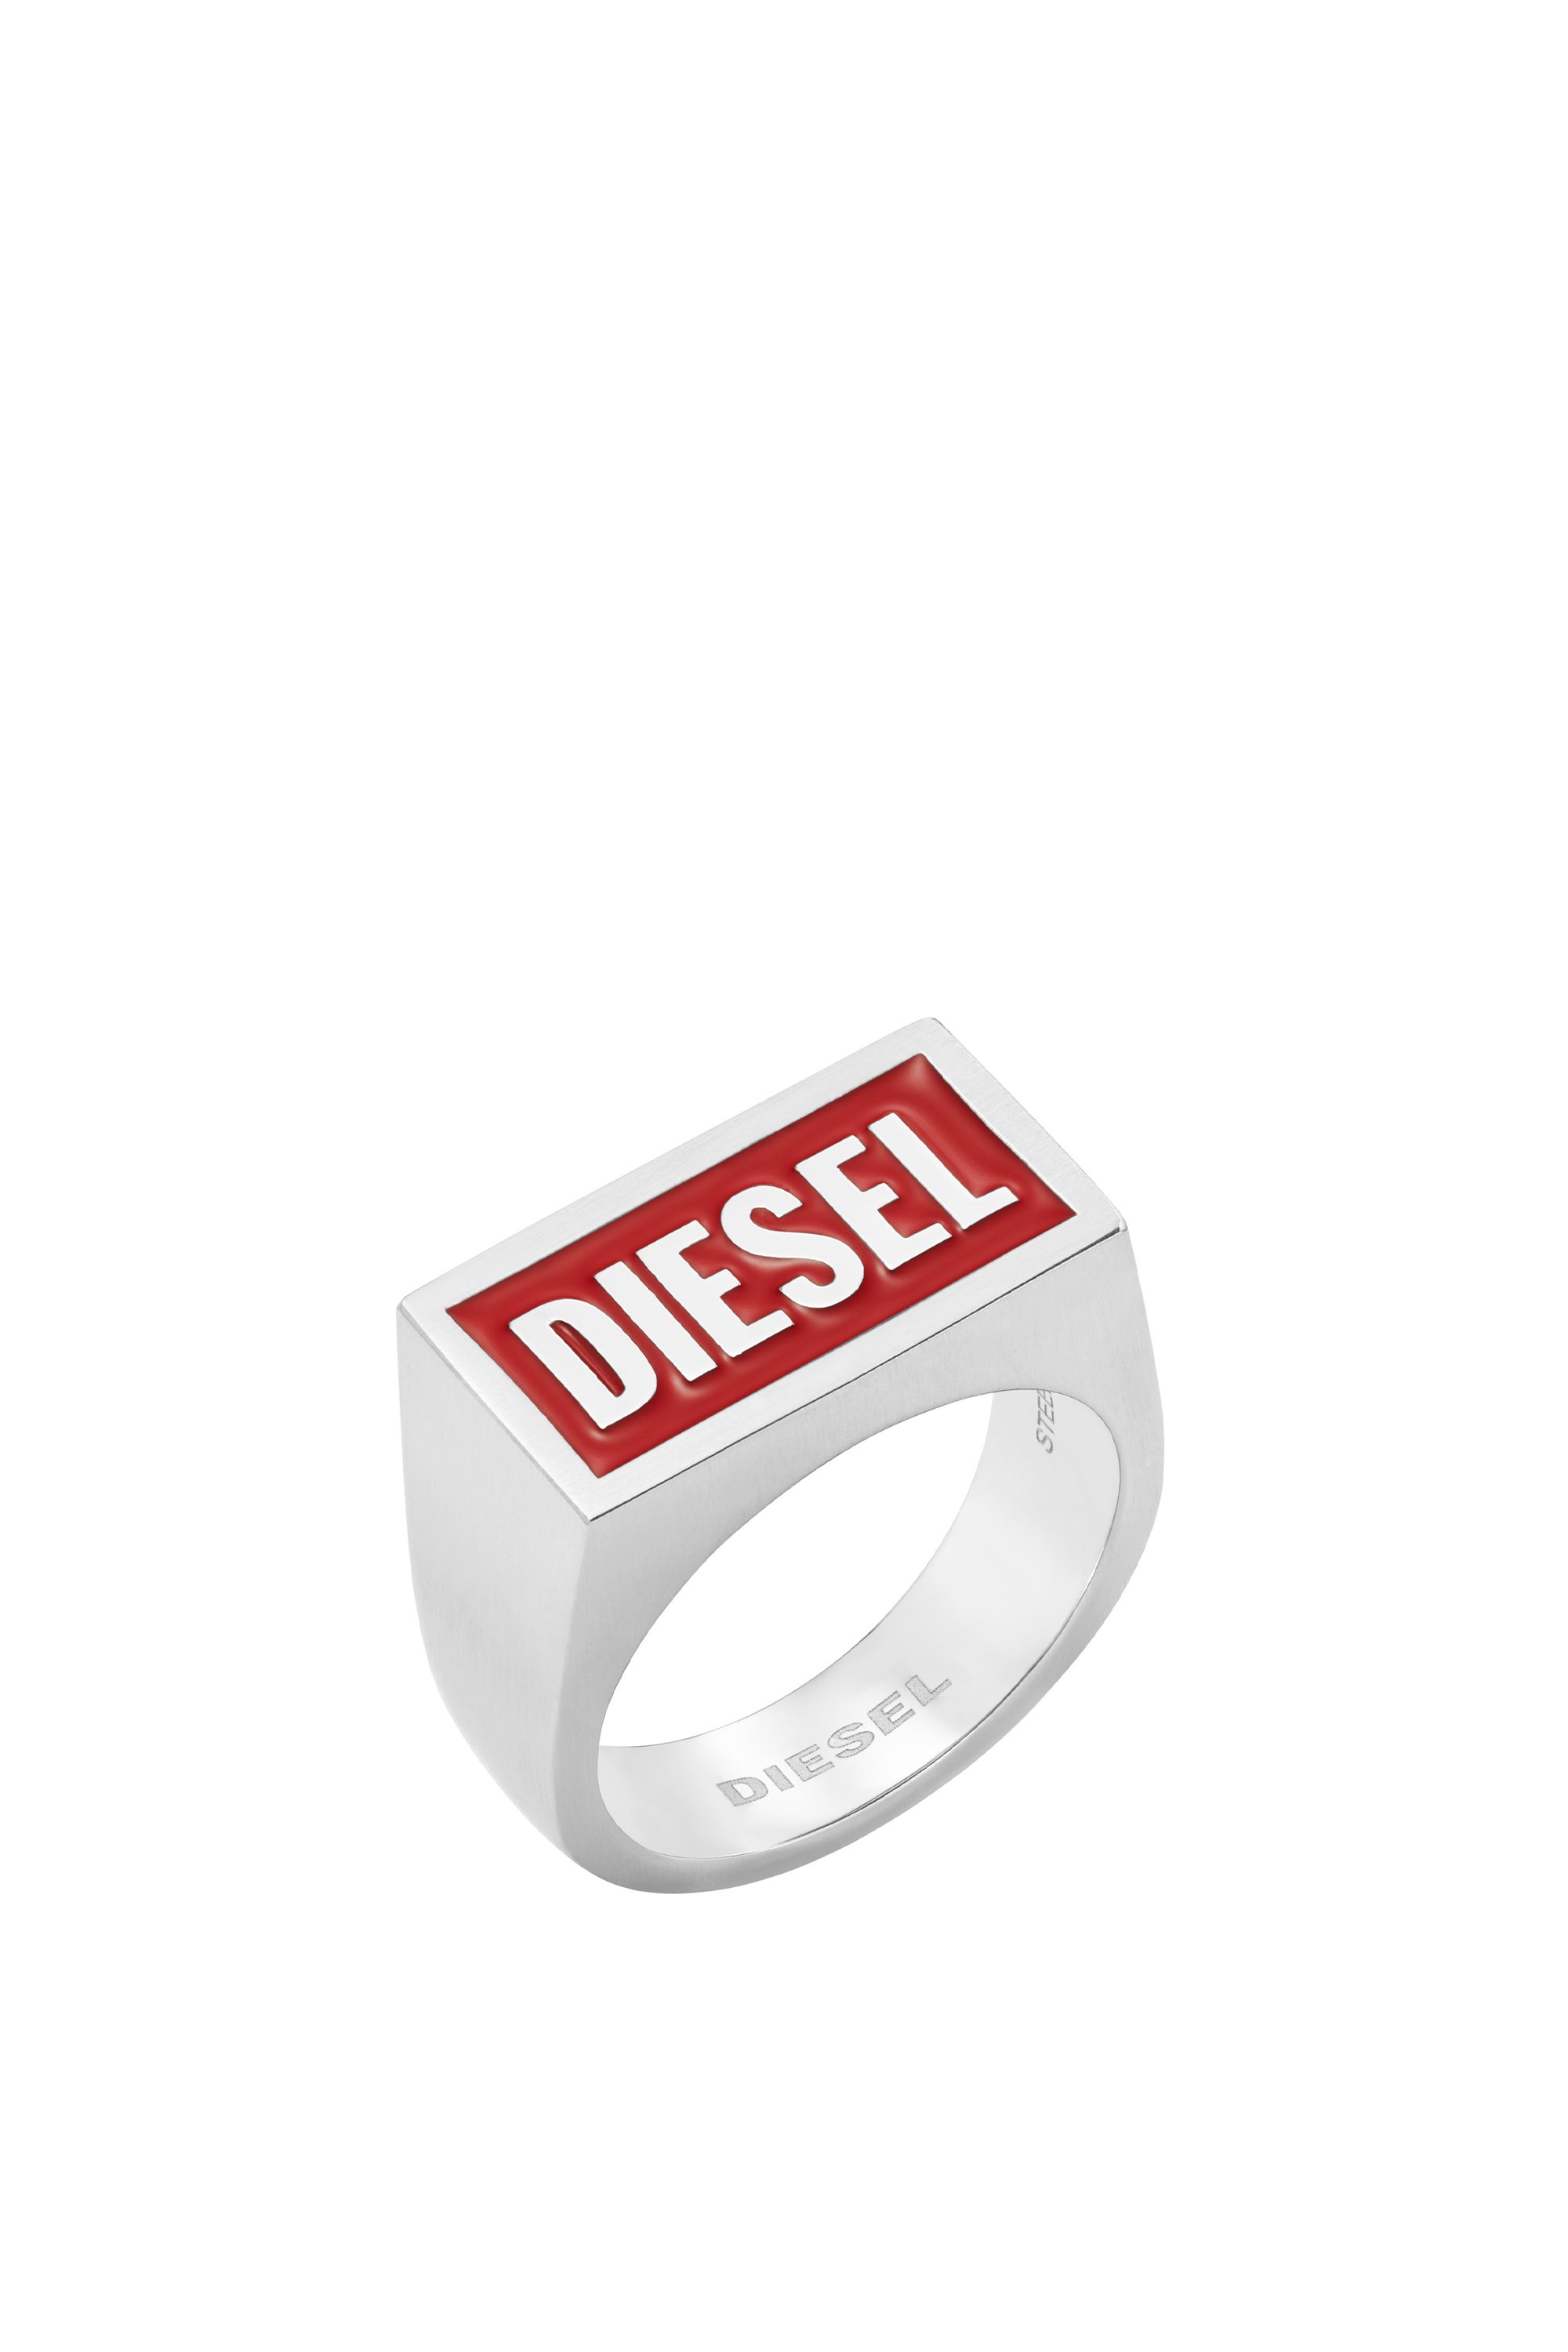 Diesel - DX1366, Plata - Image 1